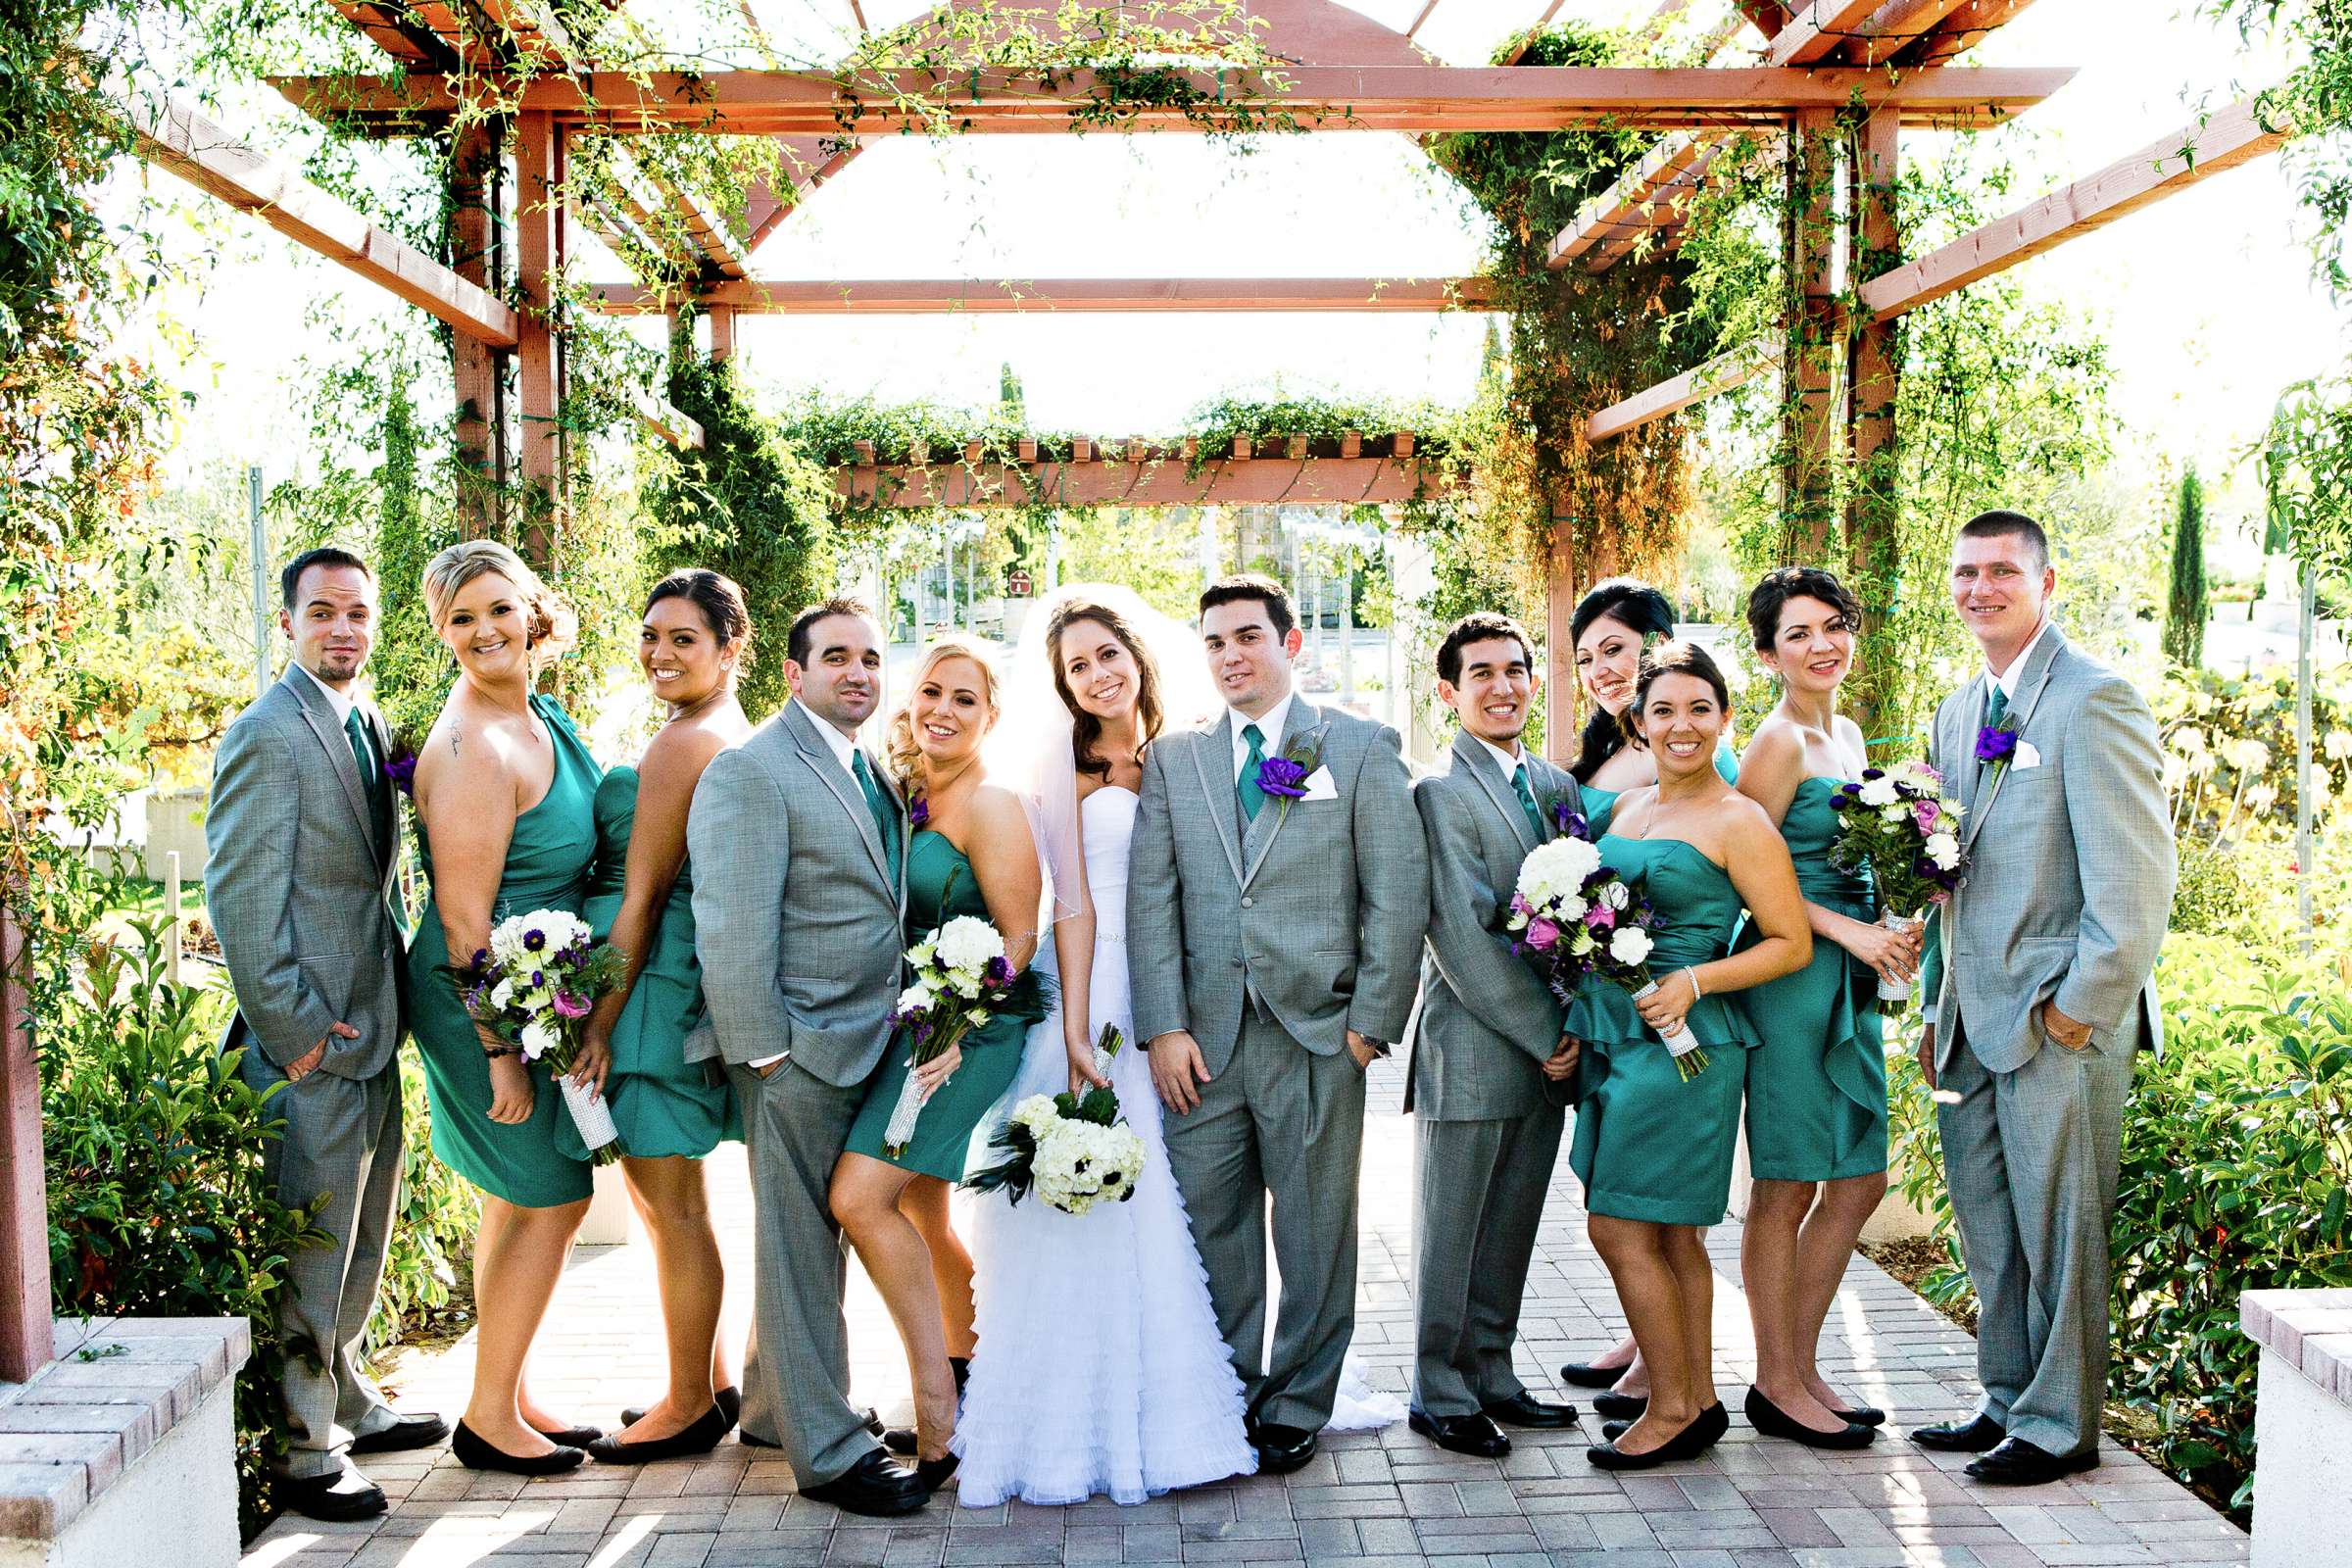 Mount Palomar Winery Wedding, Brandi and Jason Wedding Photo #321666 by True Photography